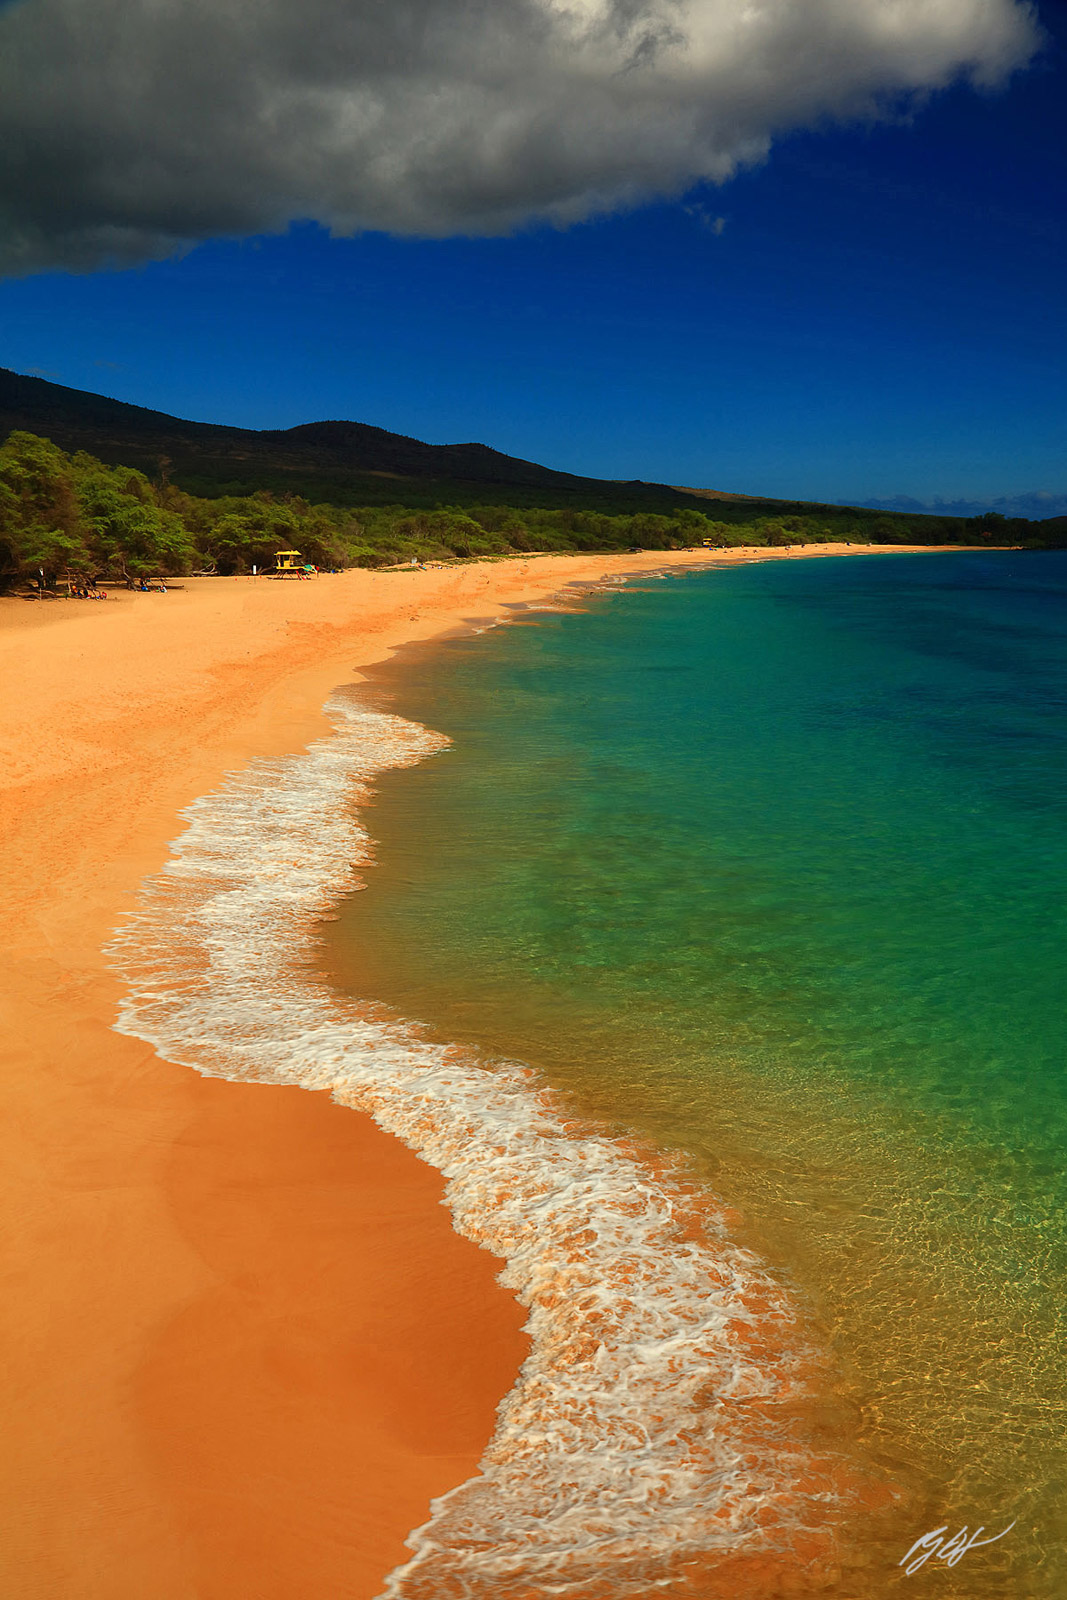 Big Beach on the Island of Maui in the Hawaiin Islands